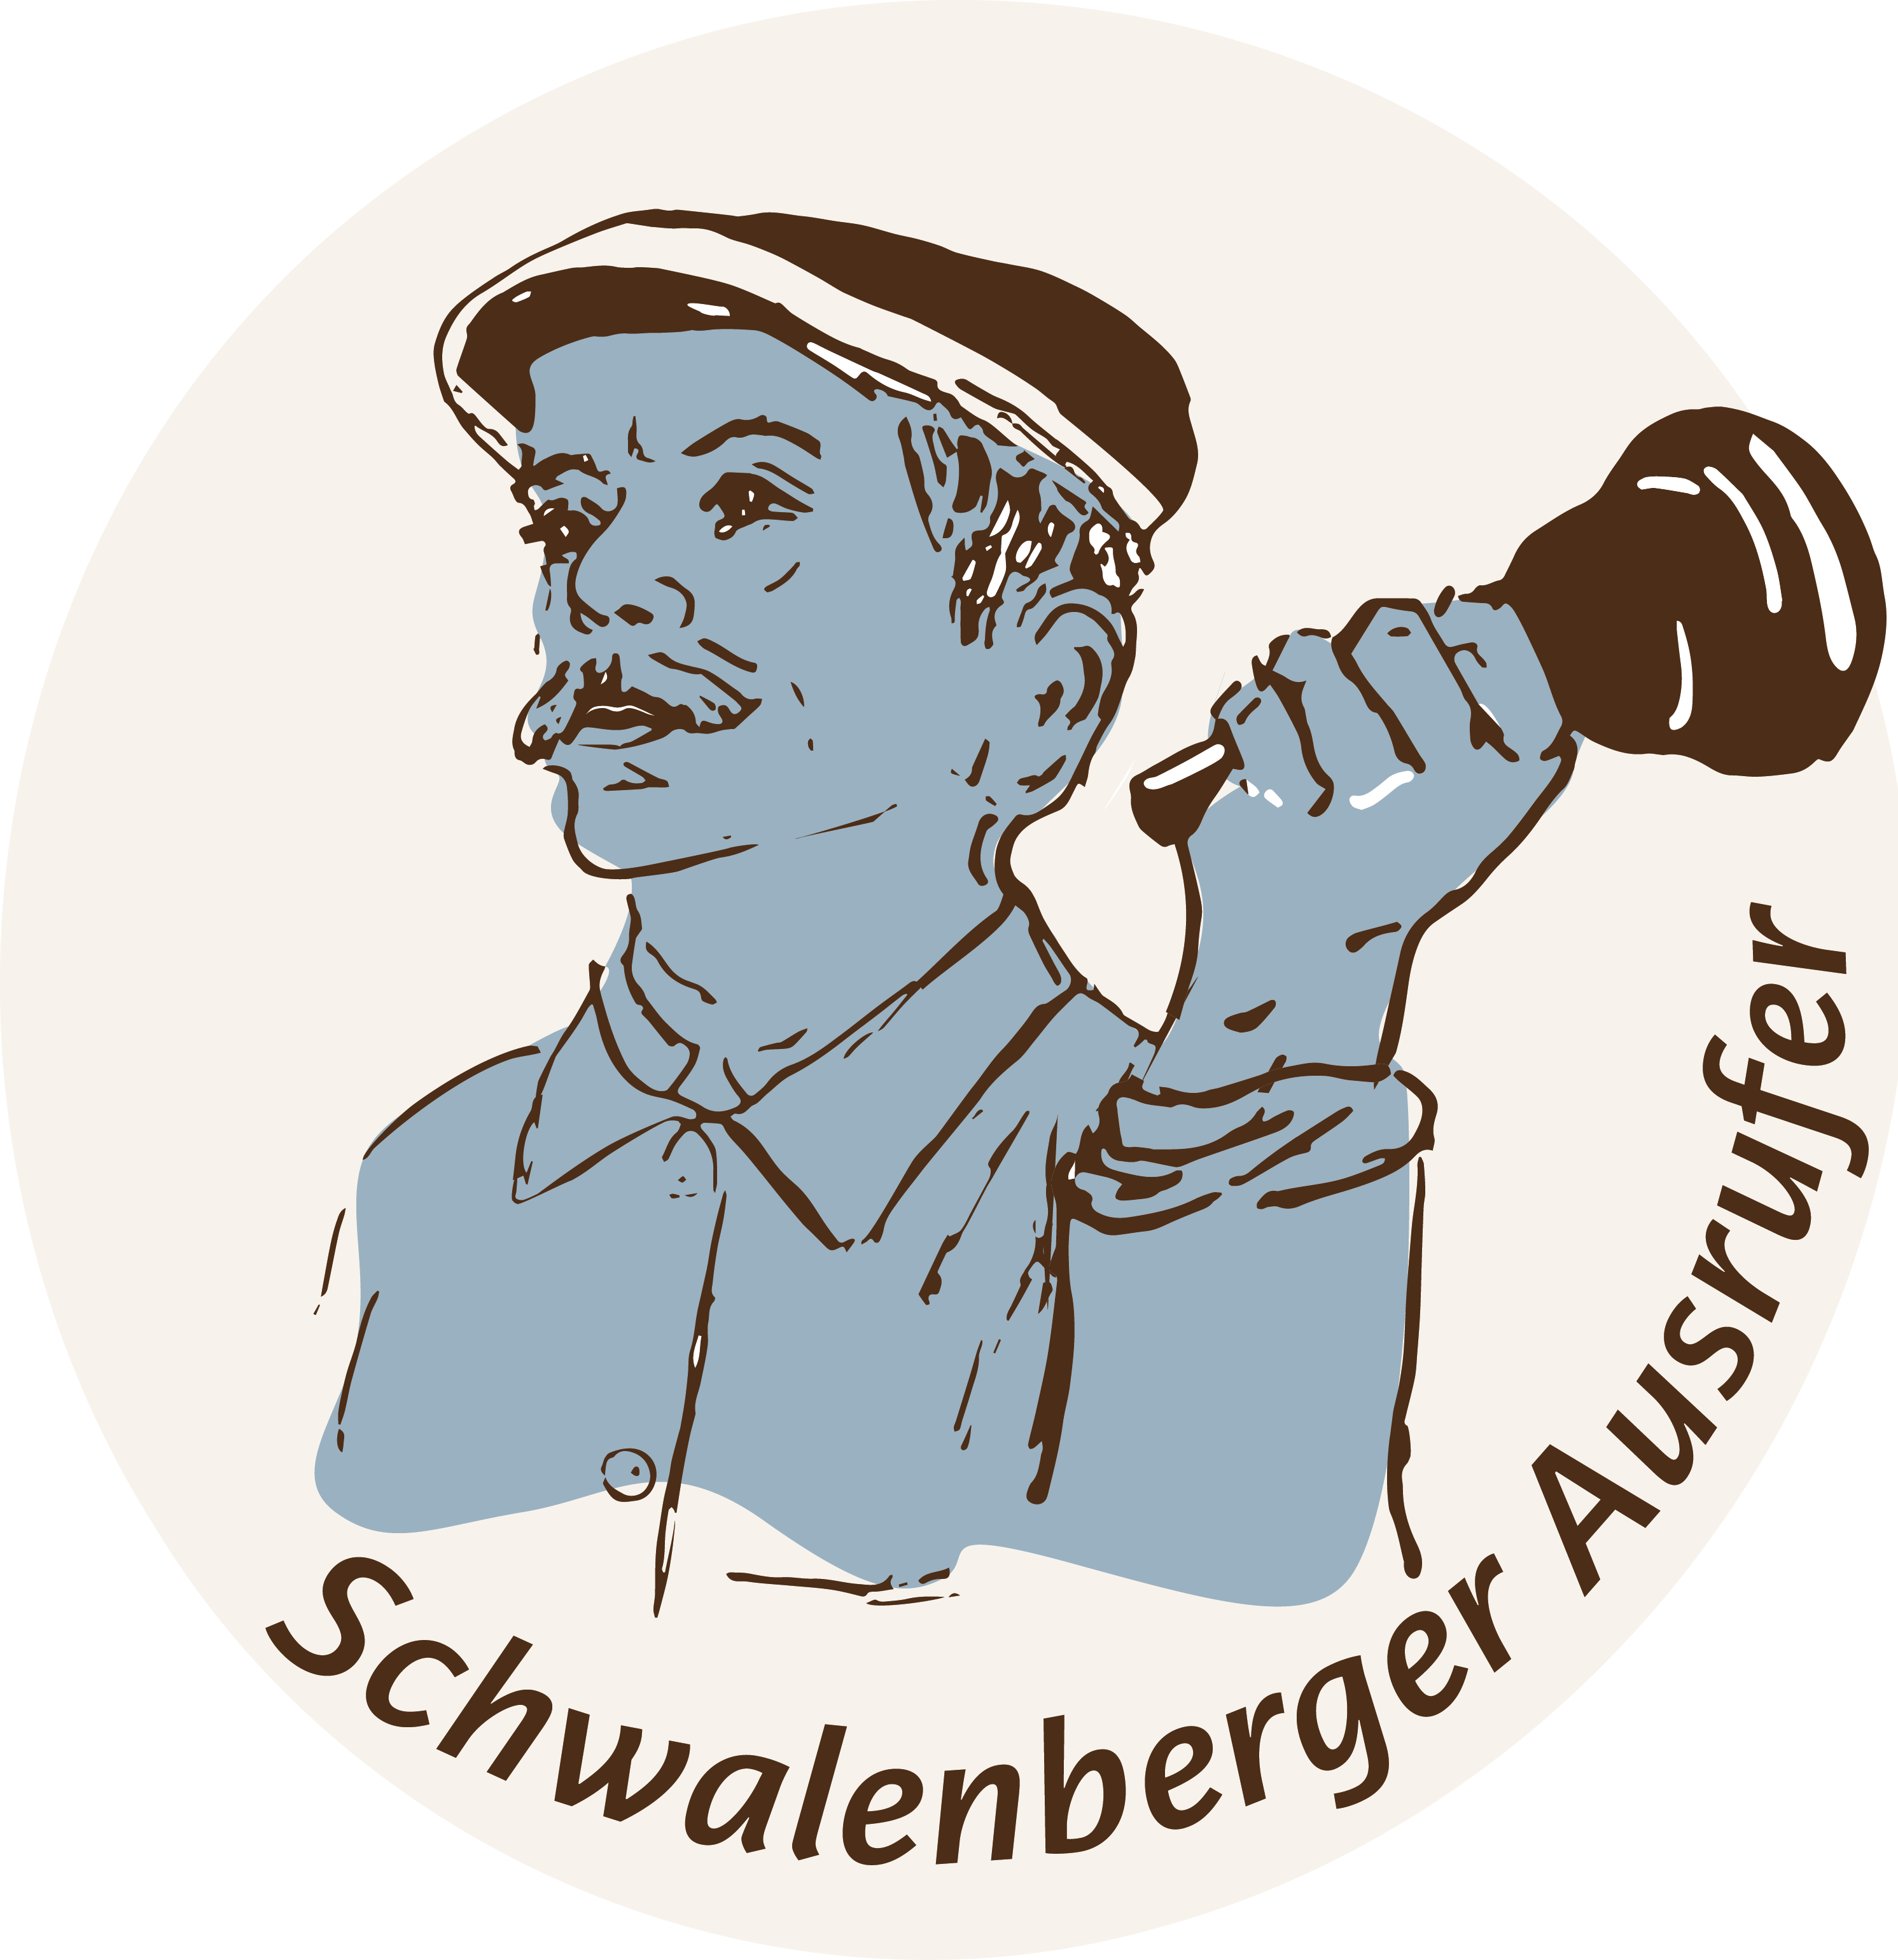 Schwalenberger Ausrufer